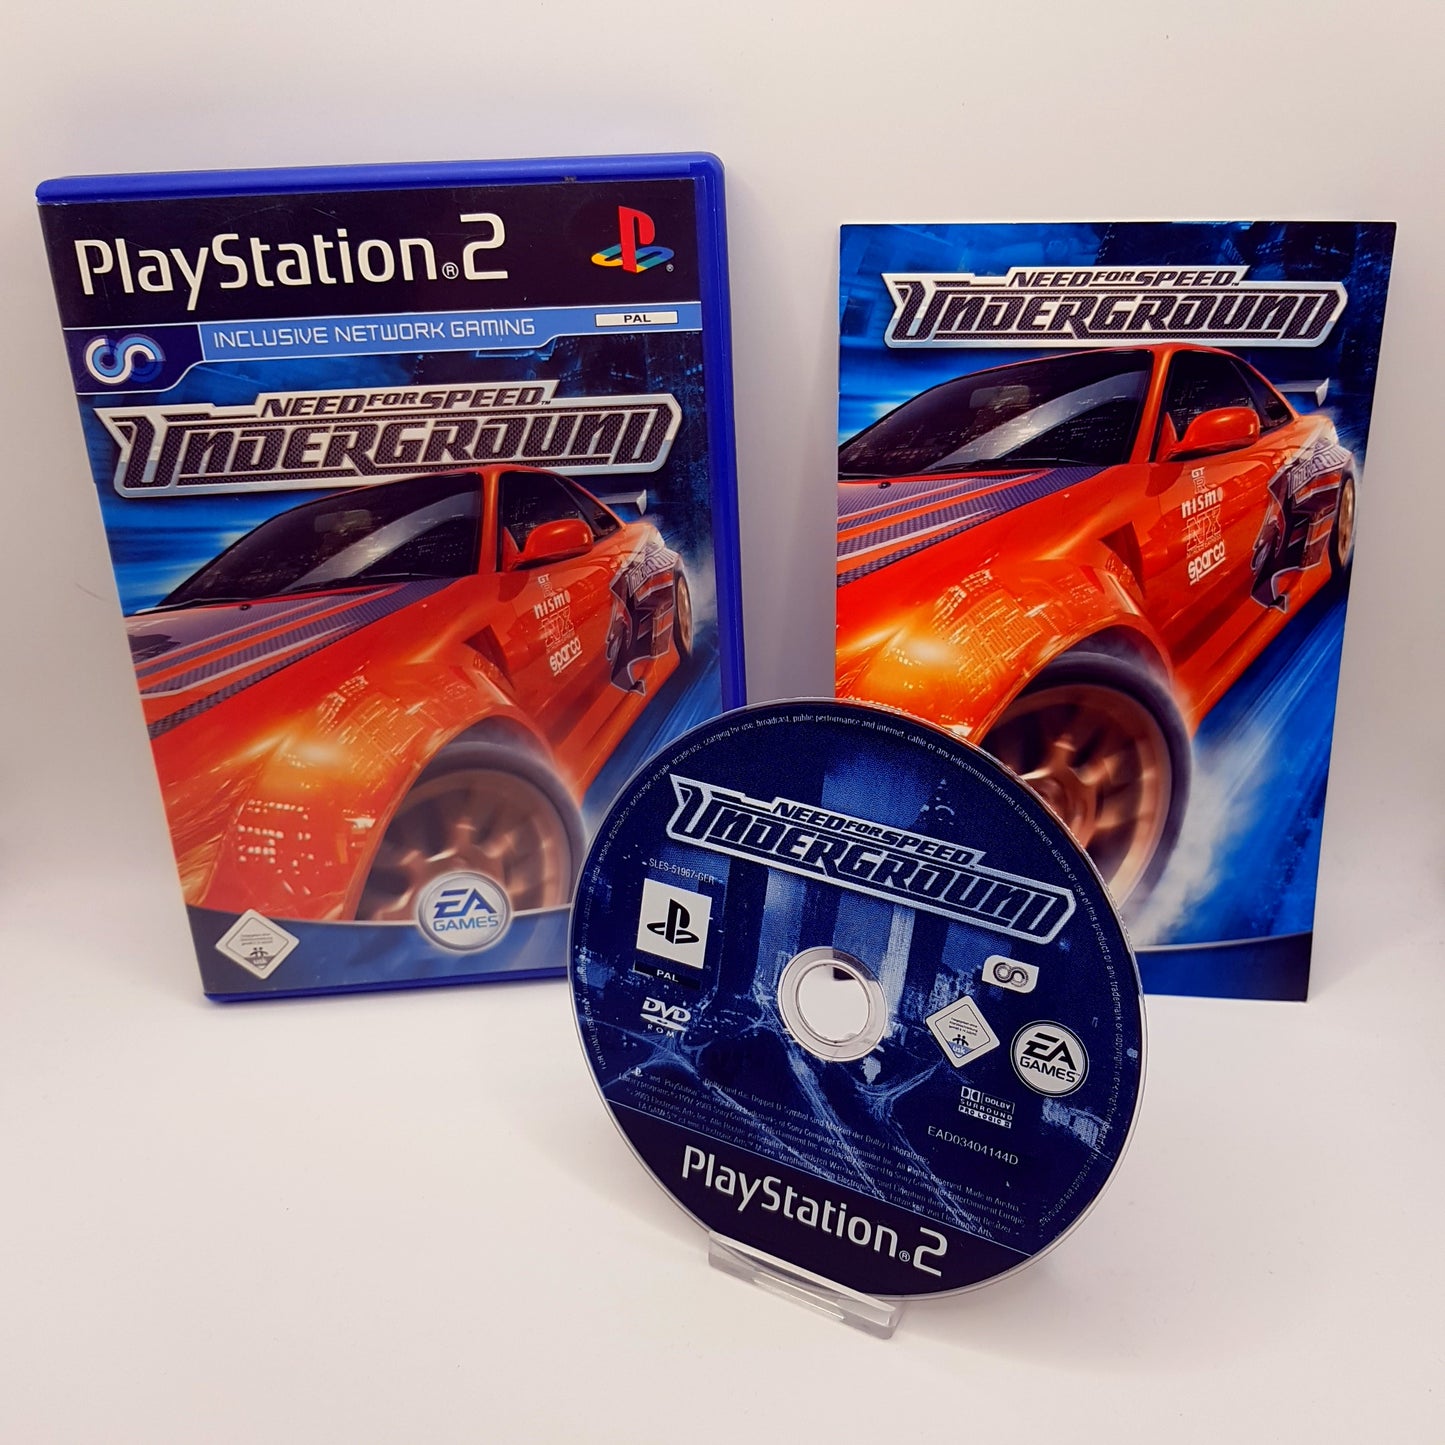 Playstation 2 Ps2 - Need for Speed Underground - gebraucht